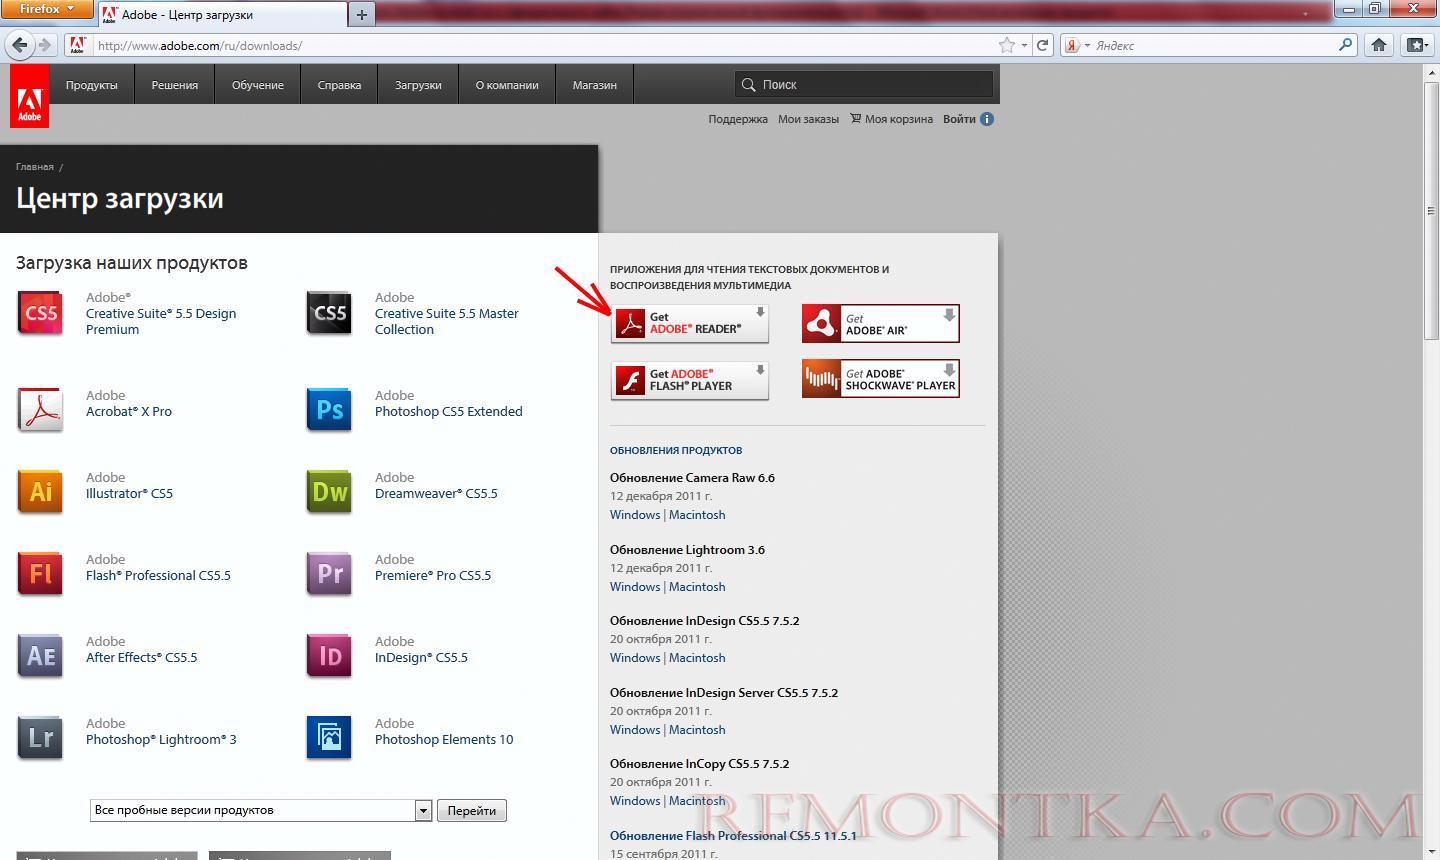 Как скачать Adobe Acrobat rus с официального сайта?